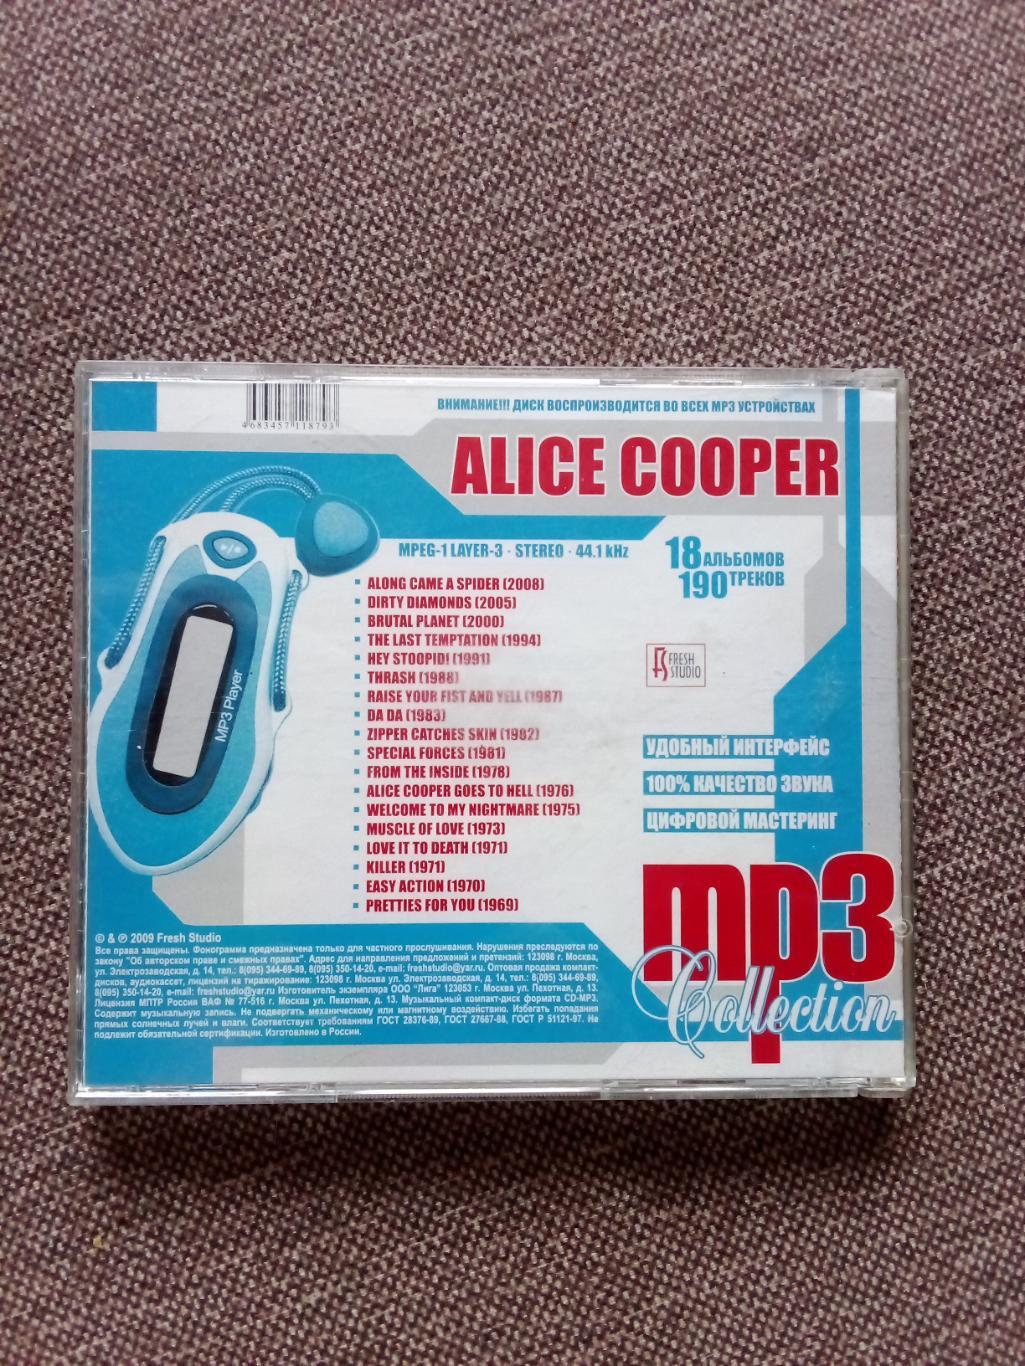 CD MP - 3 диск :Alice Cooper 1969 - 2008 гг. 18 альбомов (Рок - музыка) лицензия 1